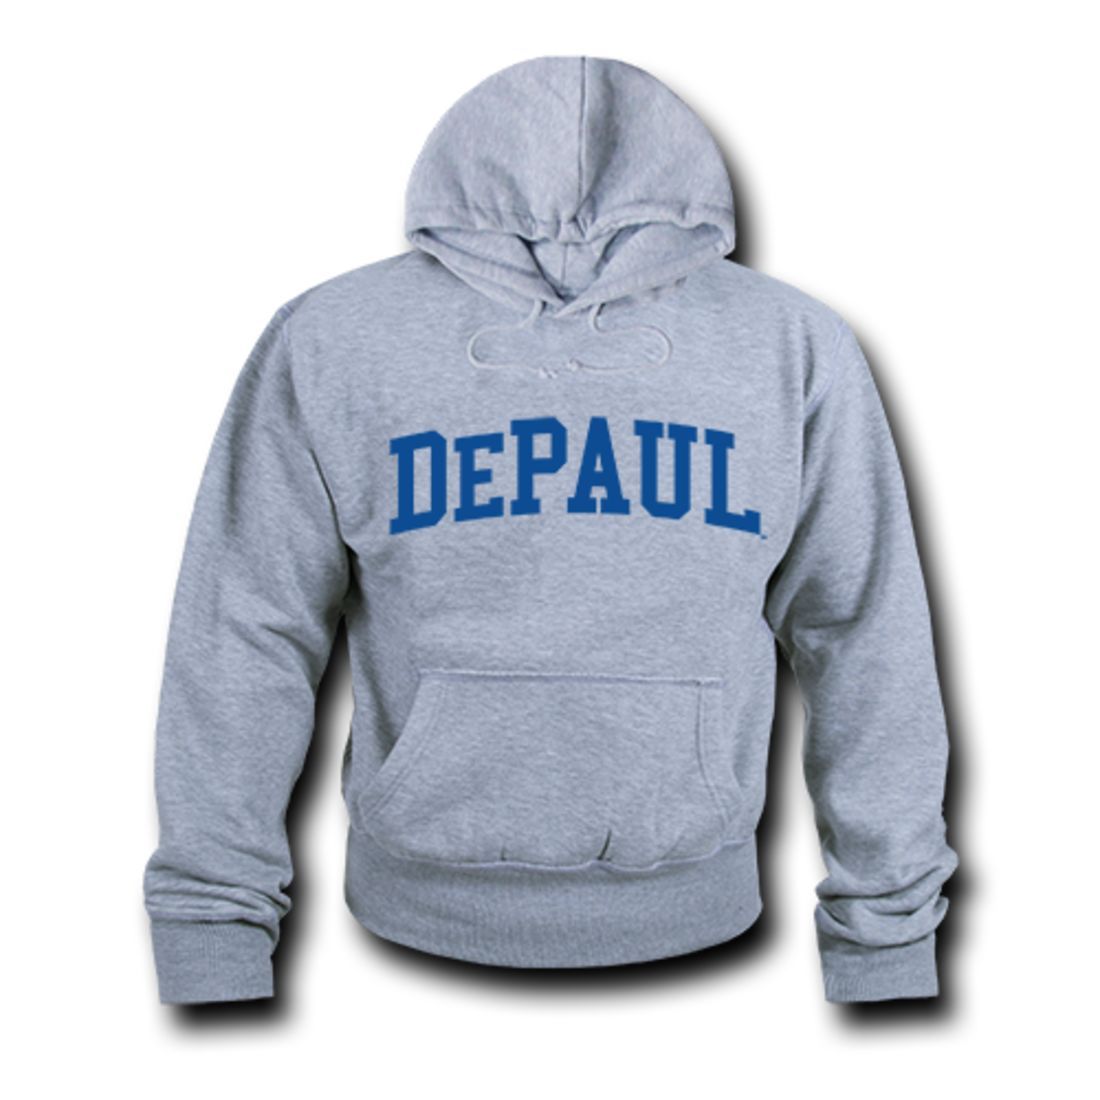 DePaul University Game Day Hoodie Sweatshirt Heather Grey-Campus-Wardrobe